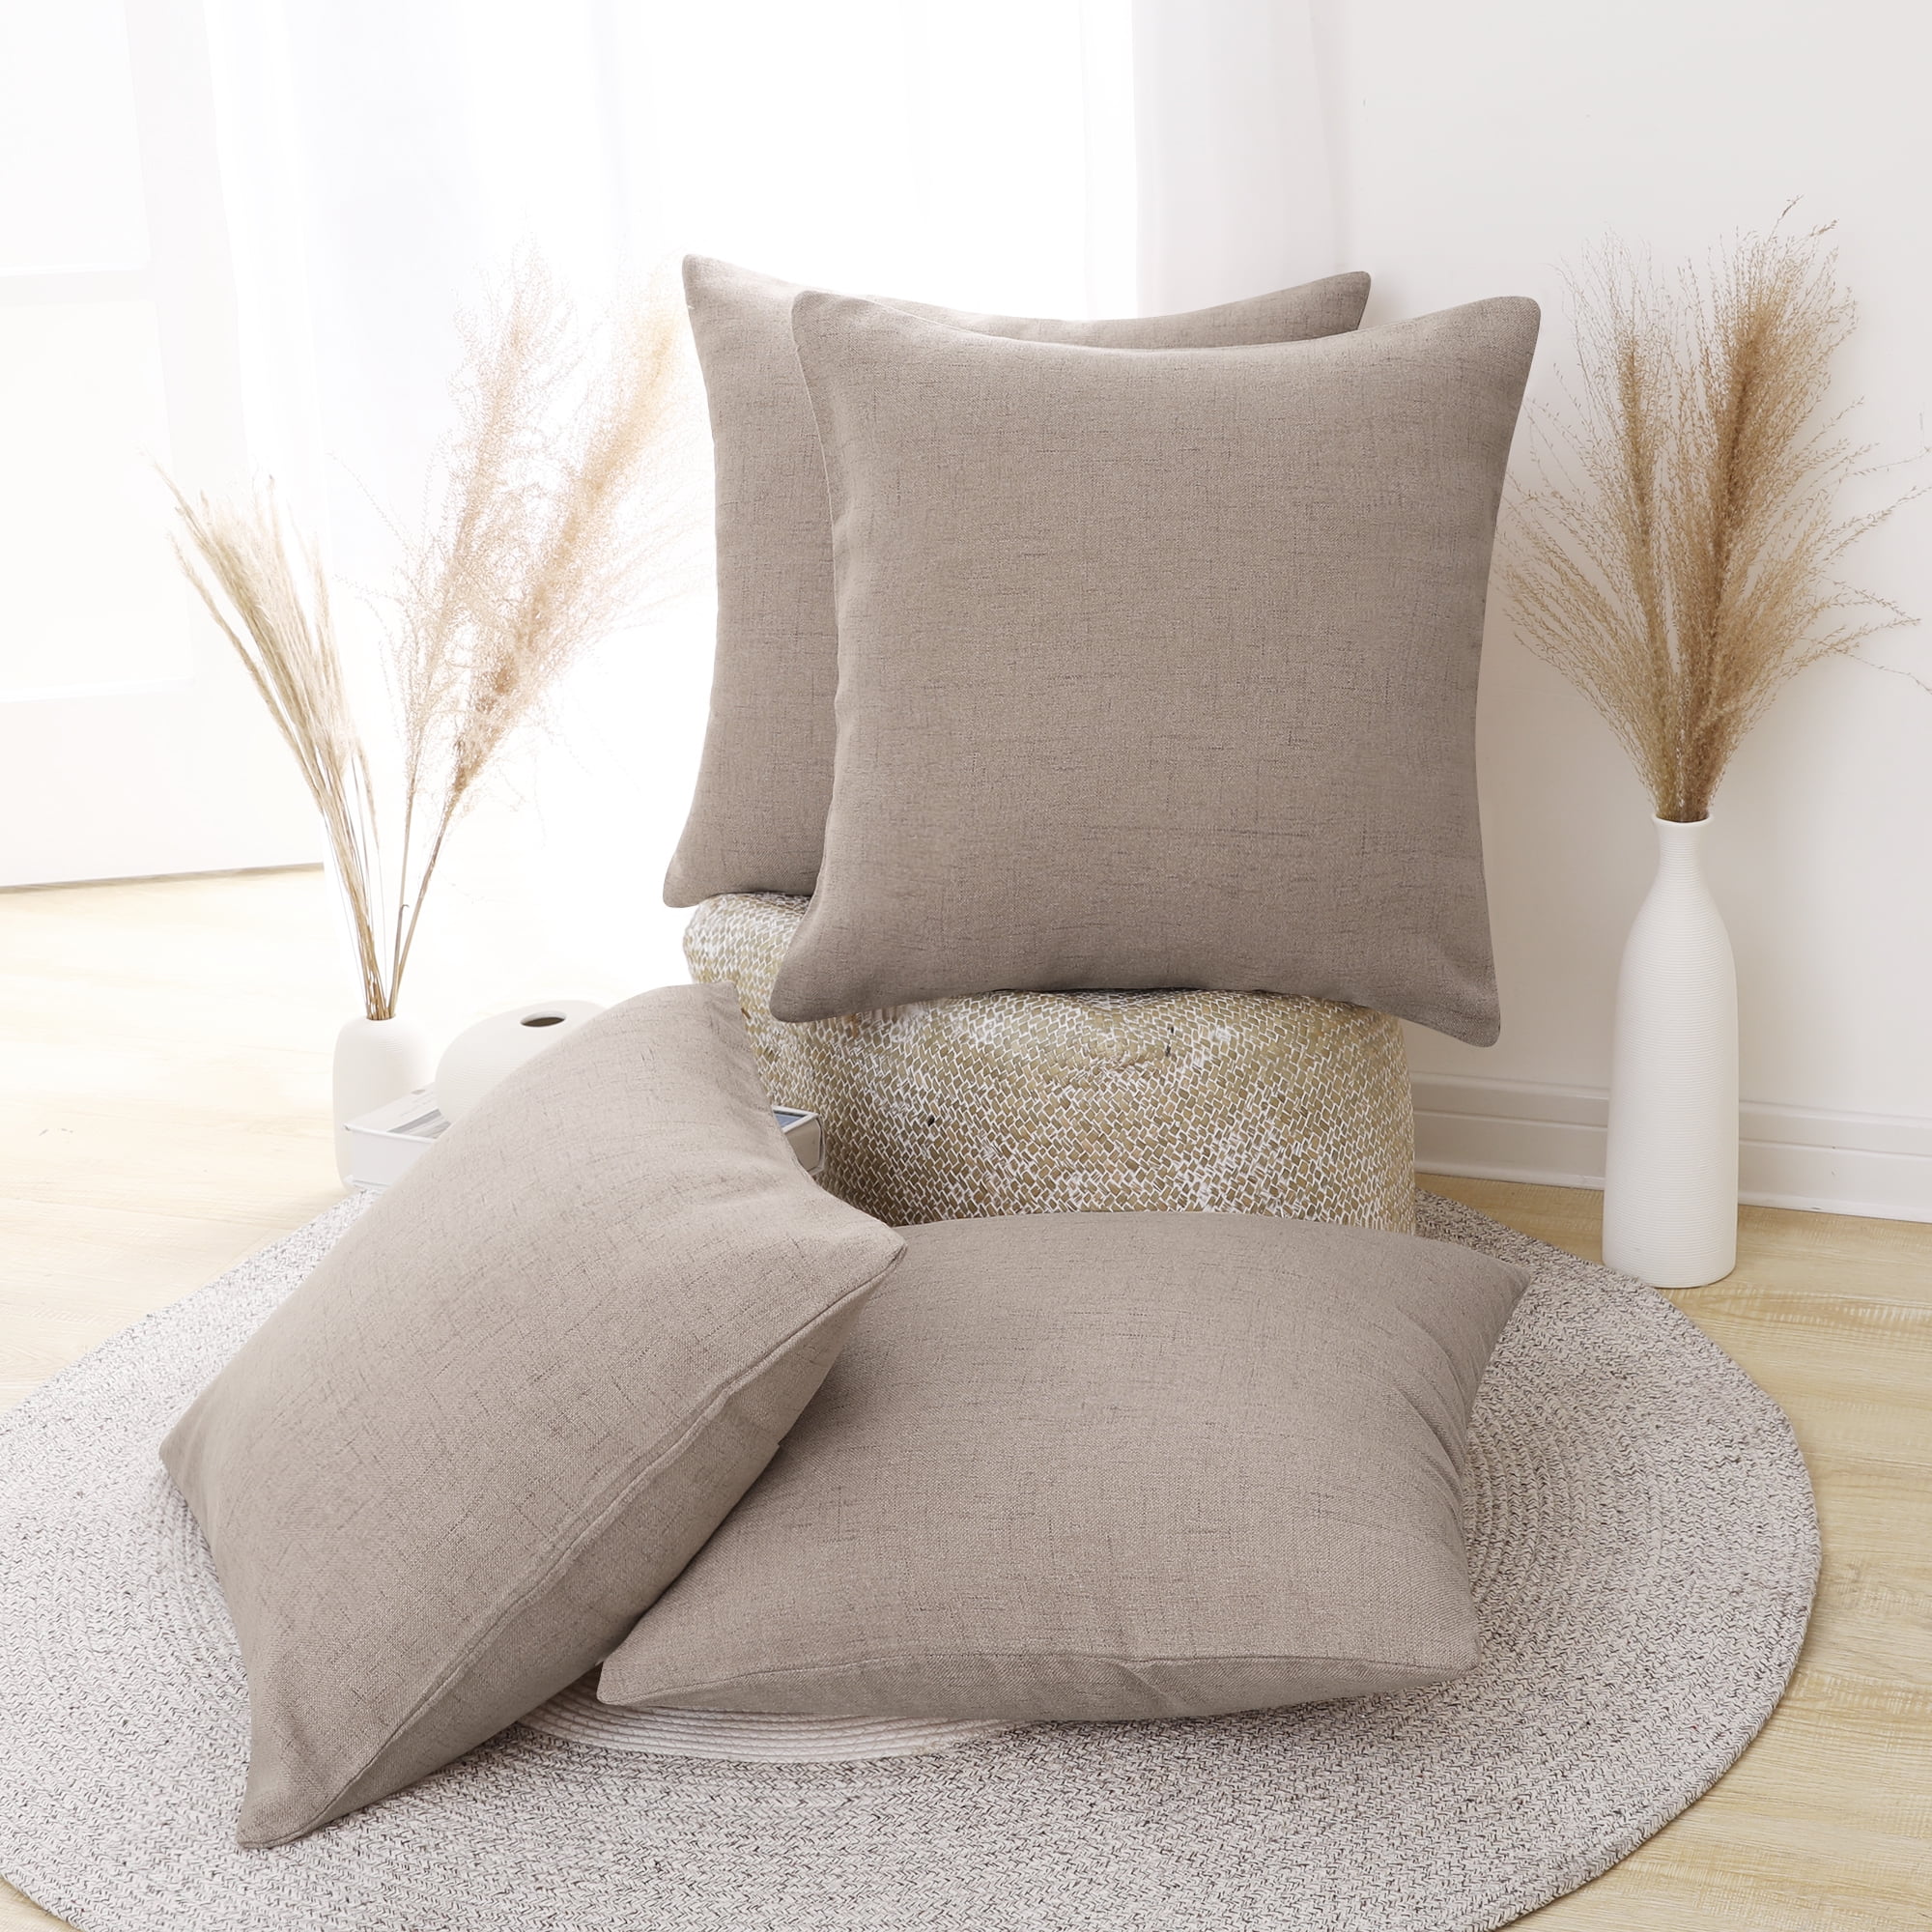 2 Pillow Covers Home Decor Linen Pillow Case Sofa Cushion Cover 20 x 22 Pillows 